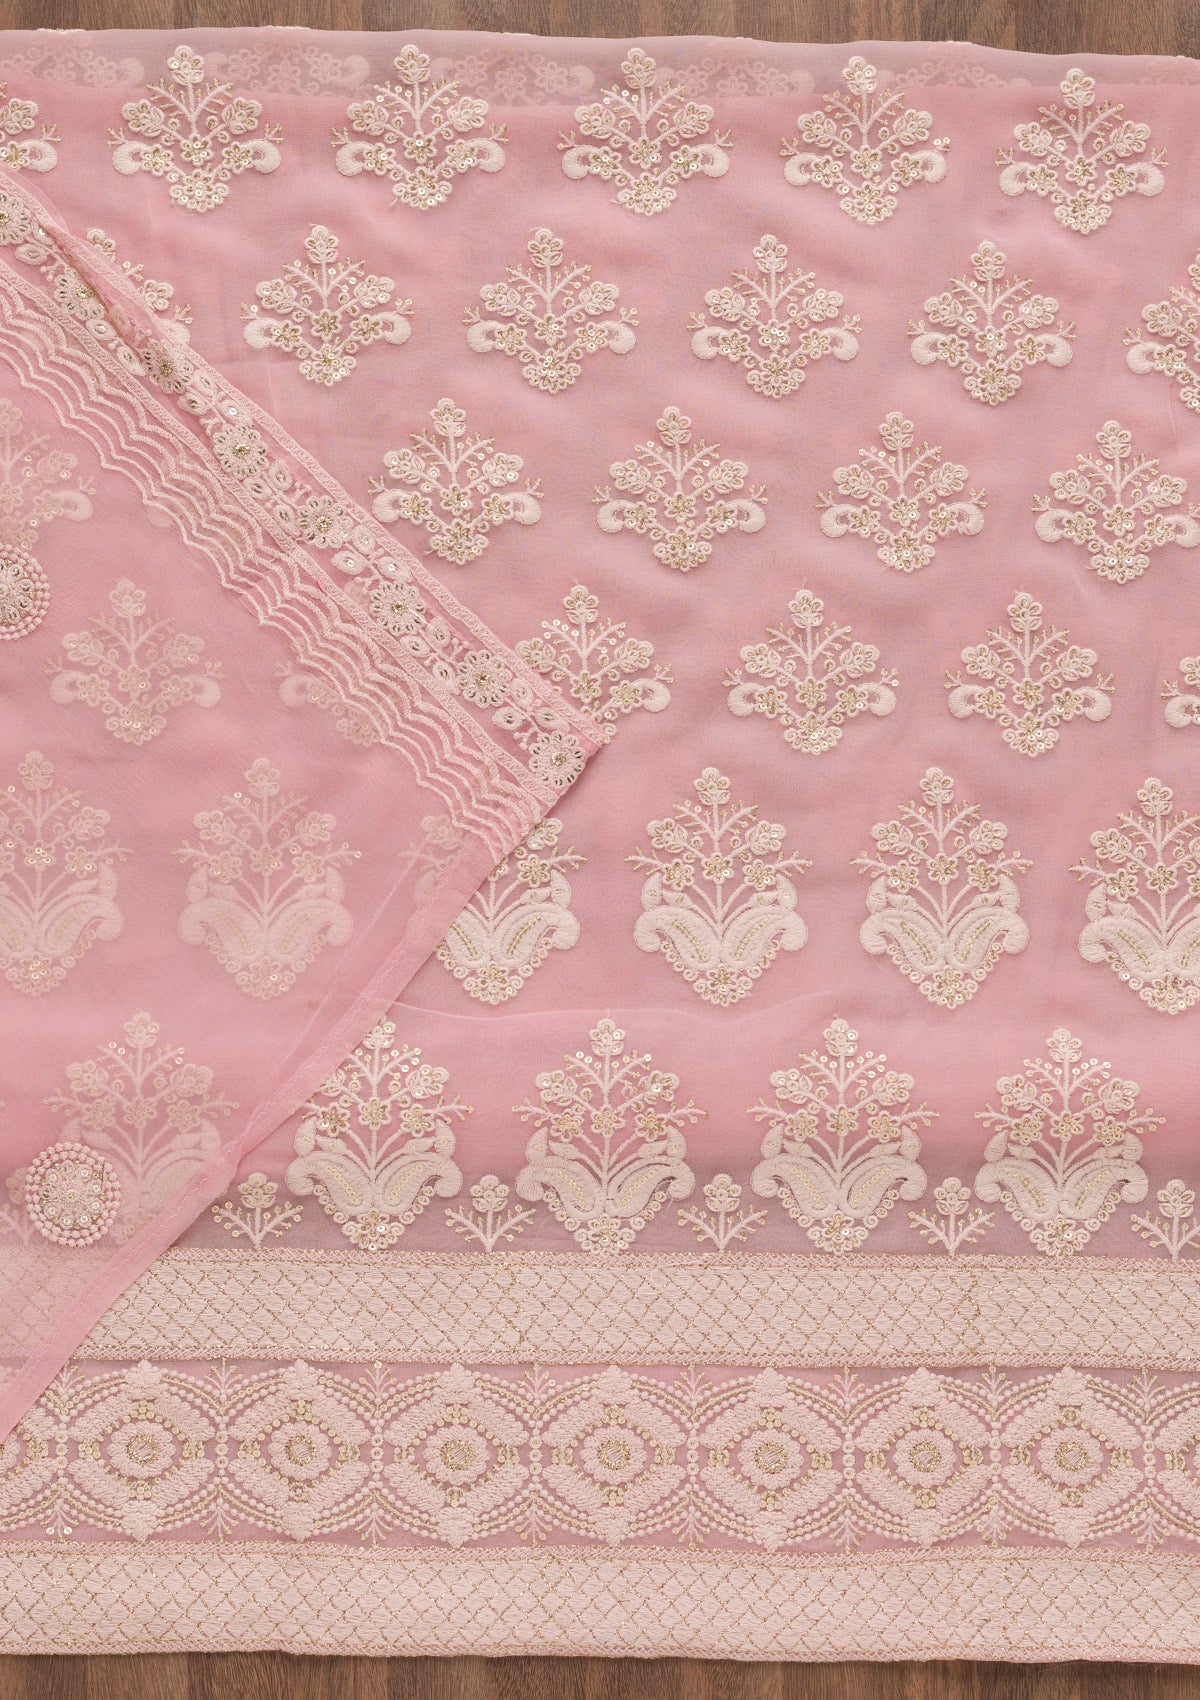 Baby Pink Threadwork Georgette Unstitched Salwar Suit